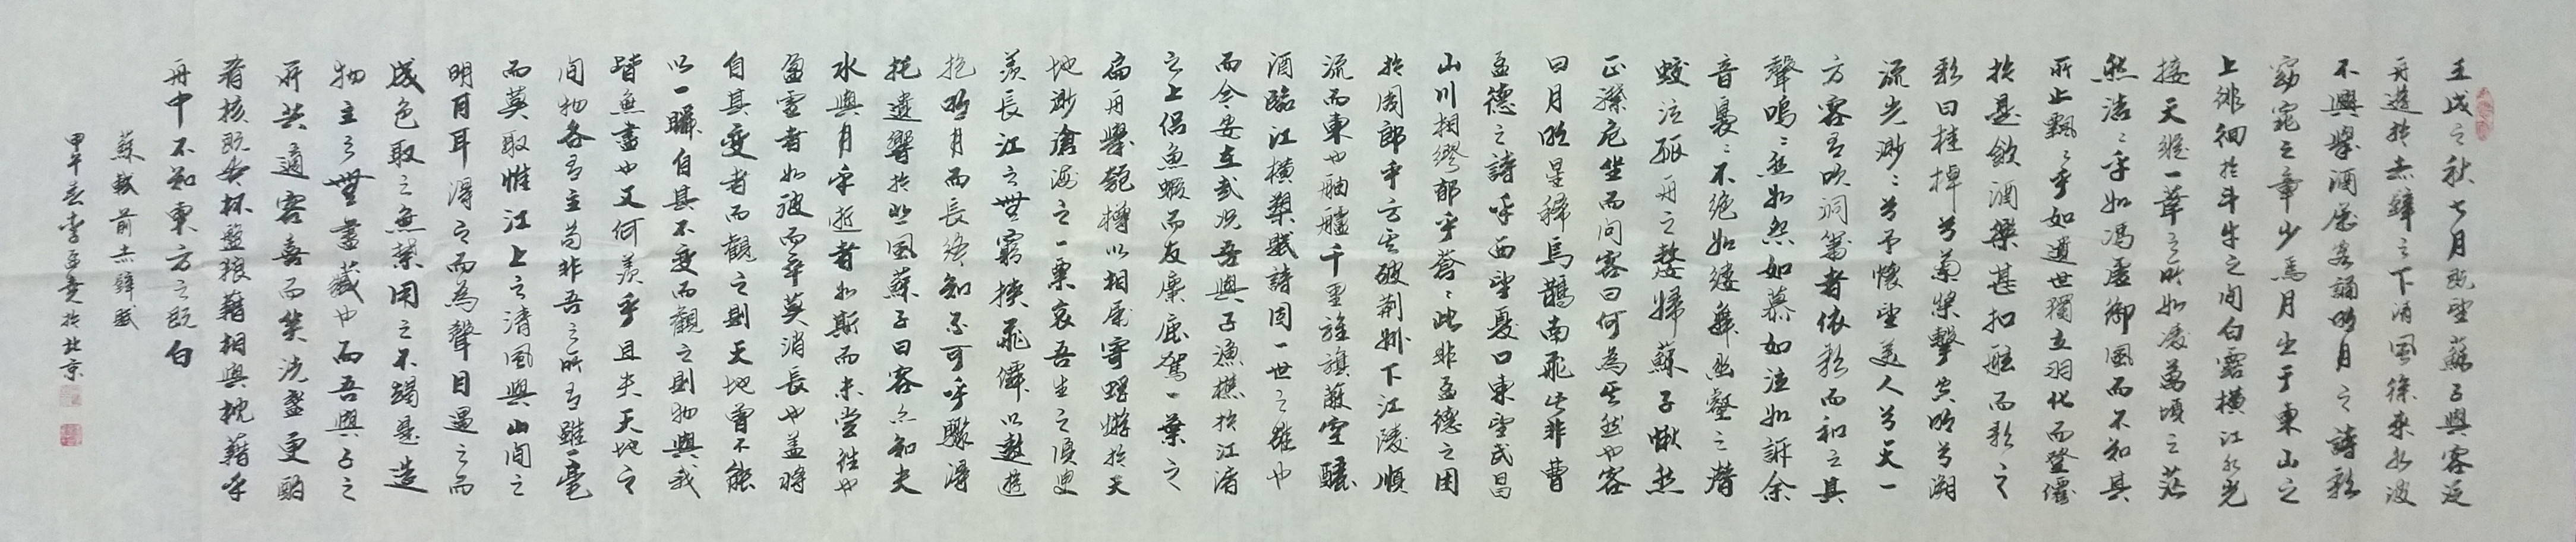 文档介绍：浅谈《前赤壁赋》中苏轼的儒释道互补思想